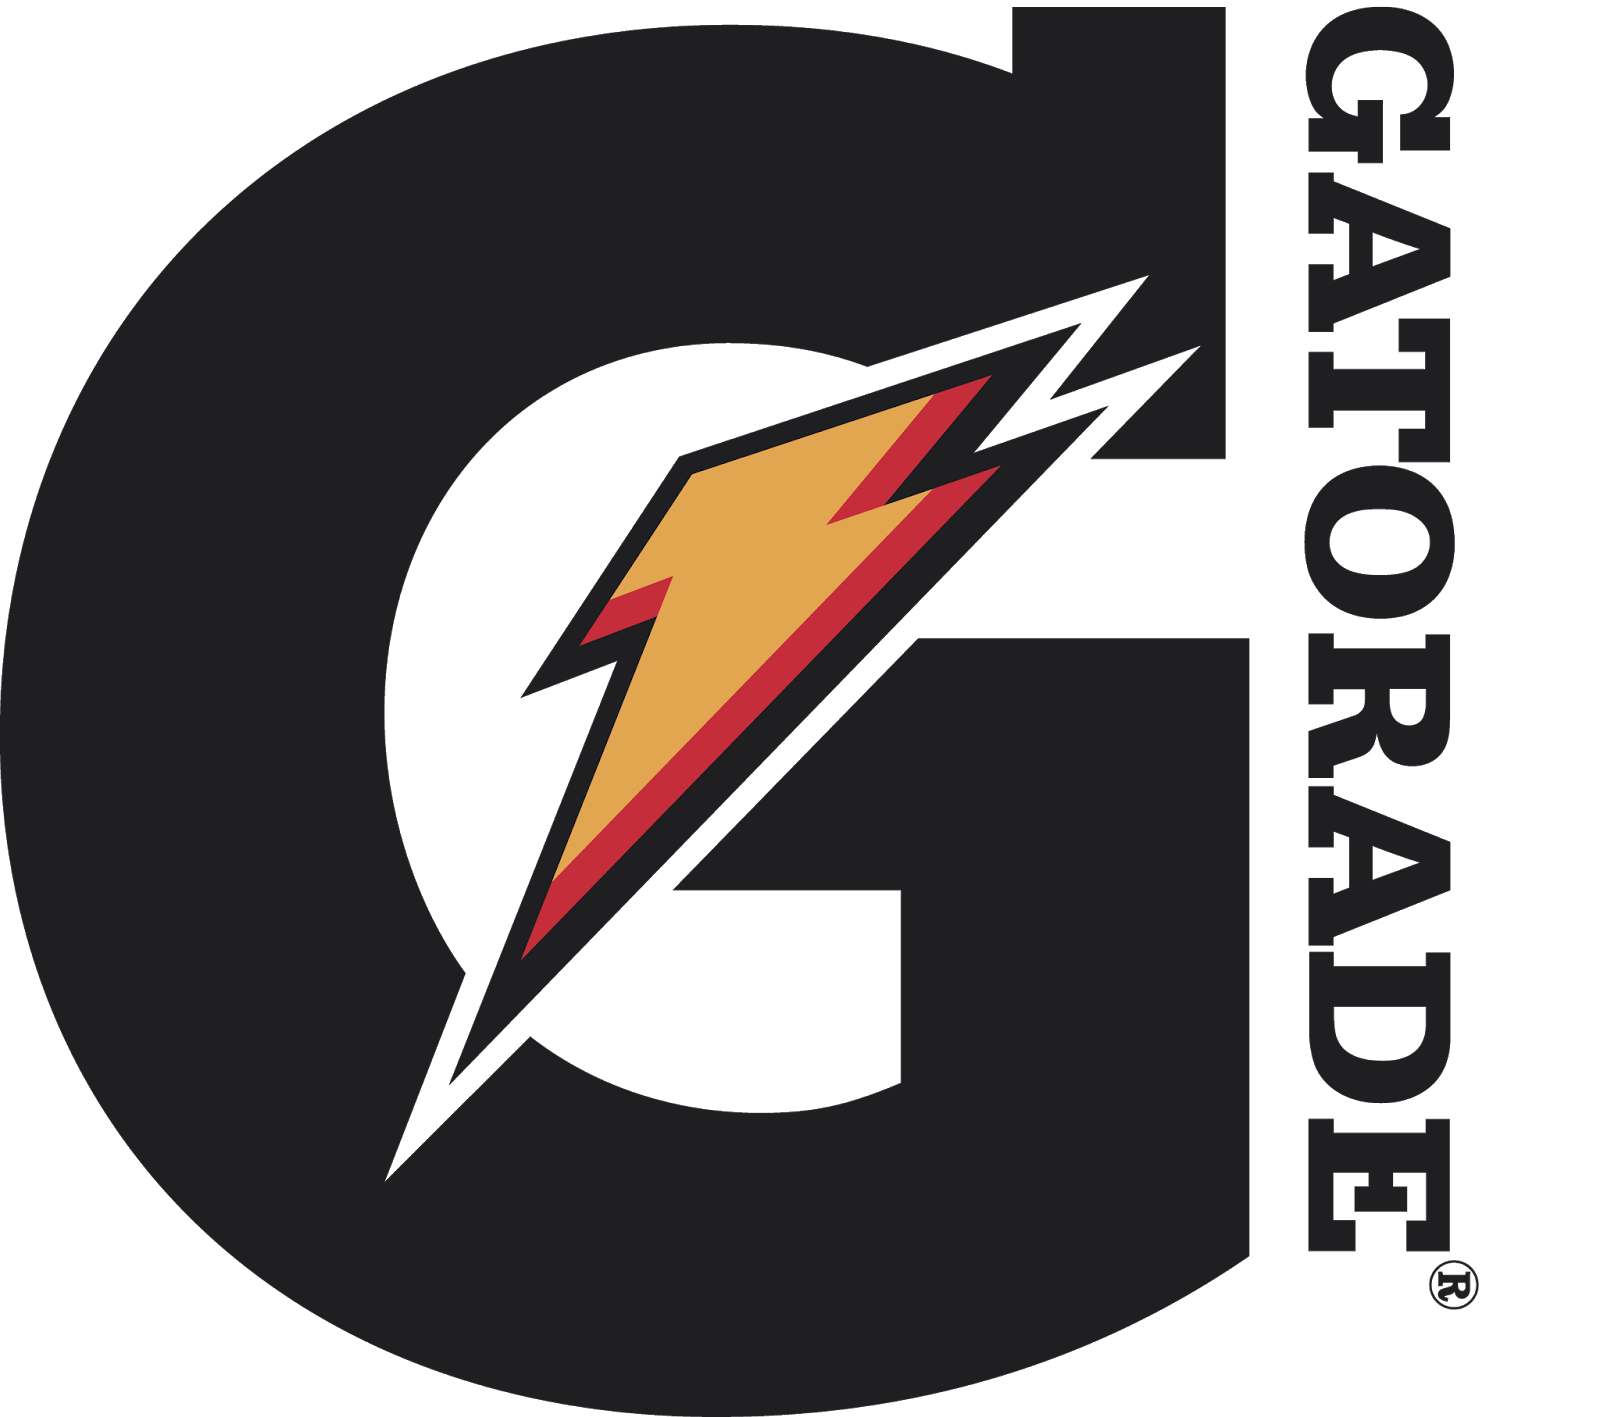 Gatorade Logo PNG Image HD